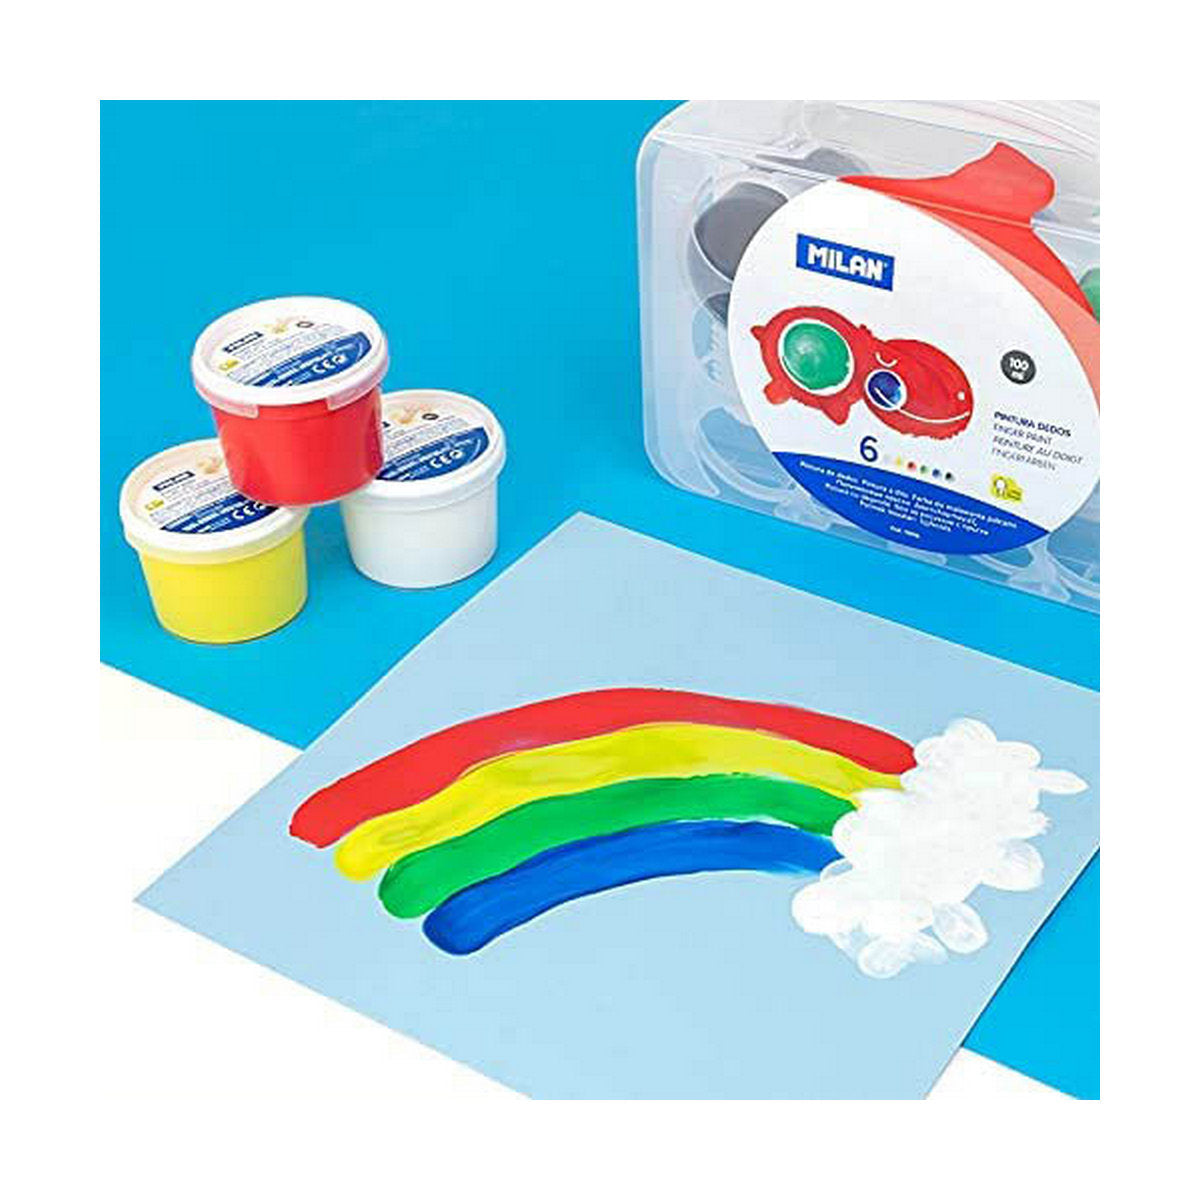 Modellera Spel Milan Soft dough 913510B Gul Blå Multicolour 85 g Grönsak (10 antal)-Leksaker och spel, Kreativa aktiviteter-Milan-peaceofhome.se